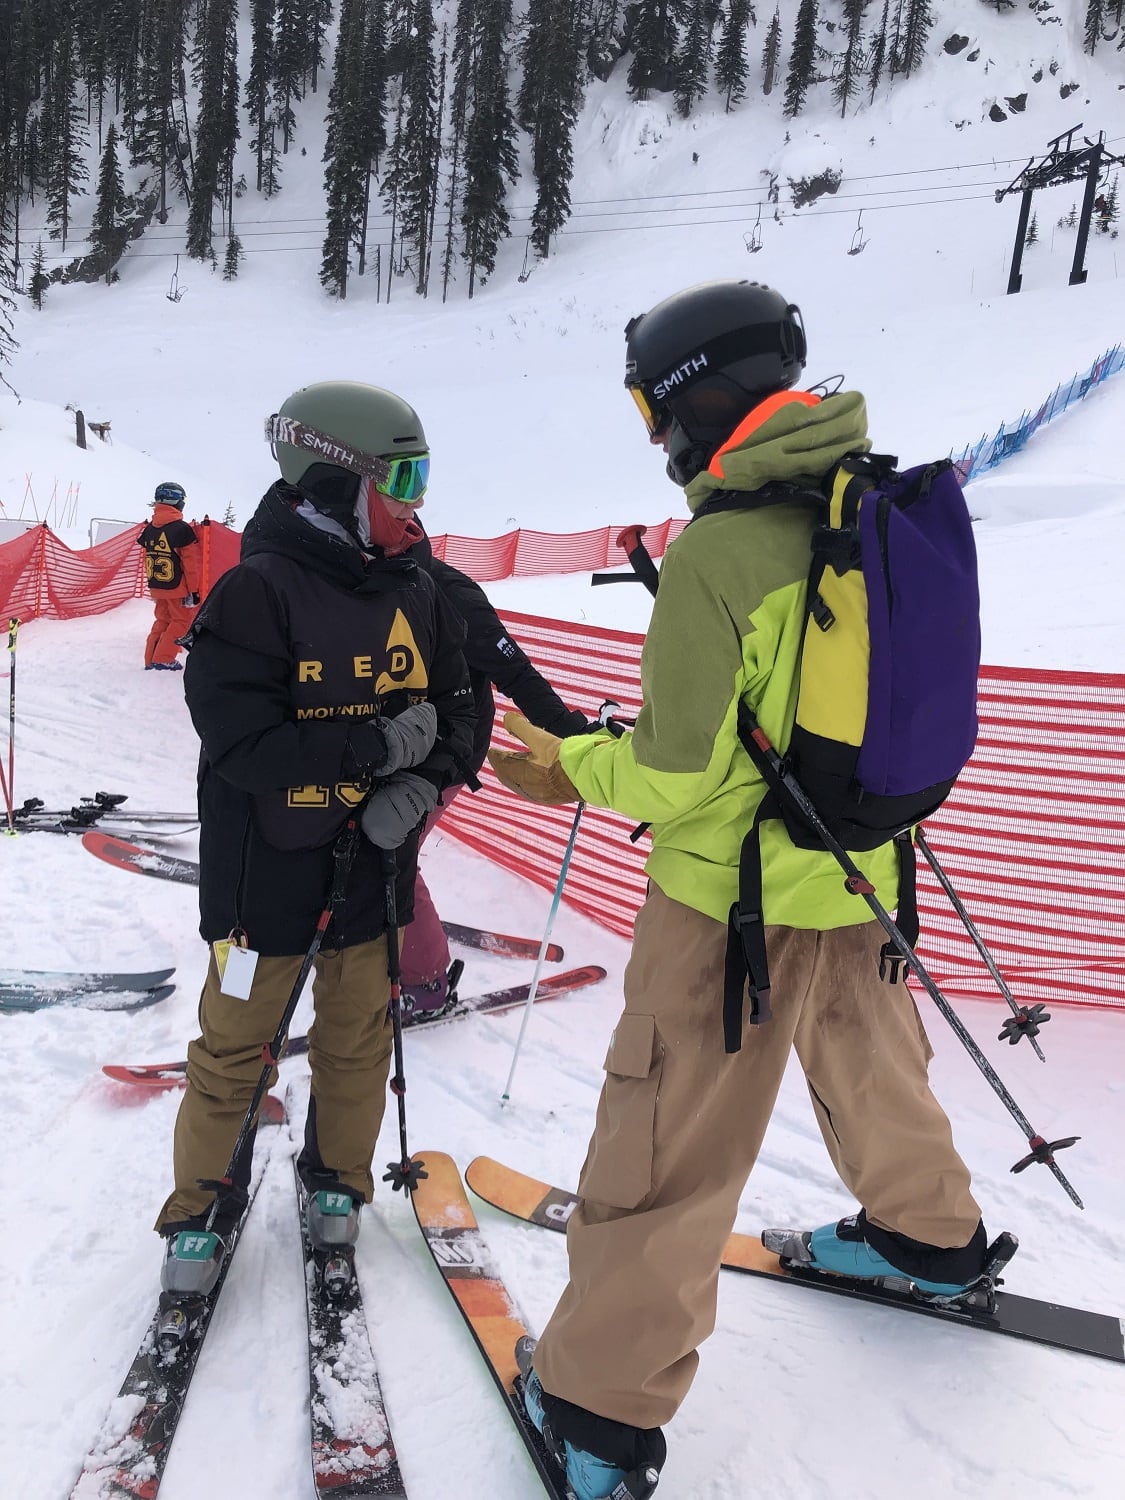 Brotherly love bridges gap in Rossland ski scene